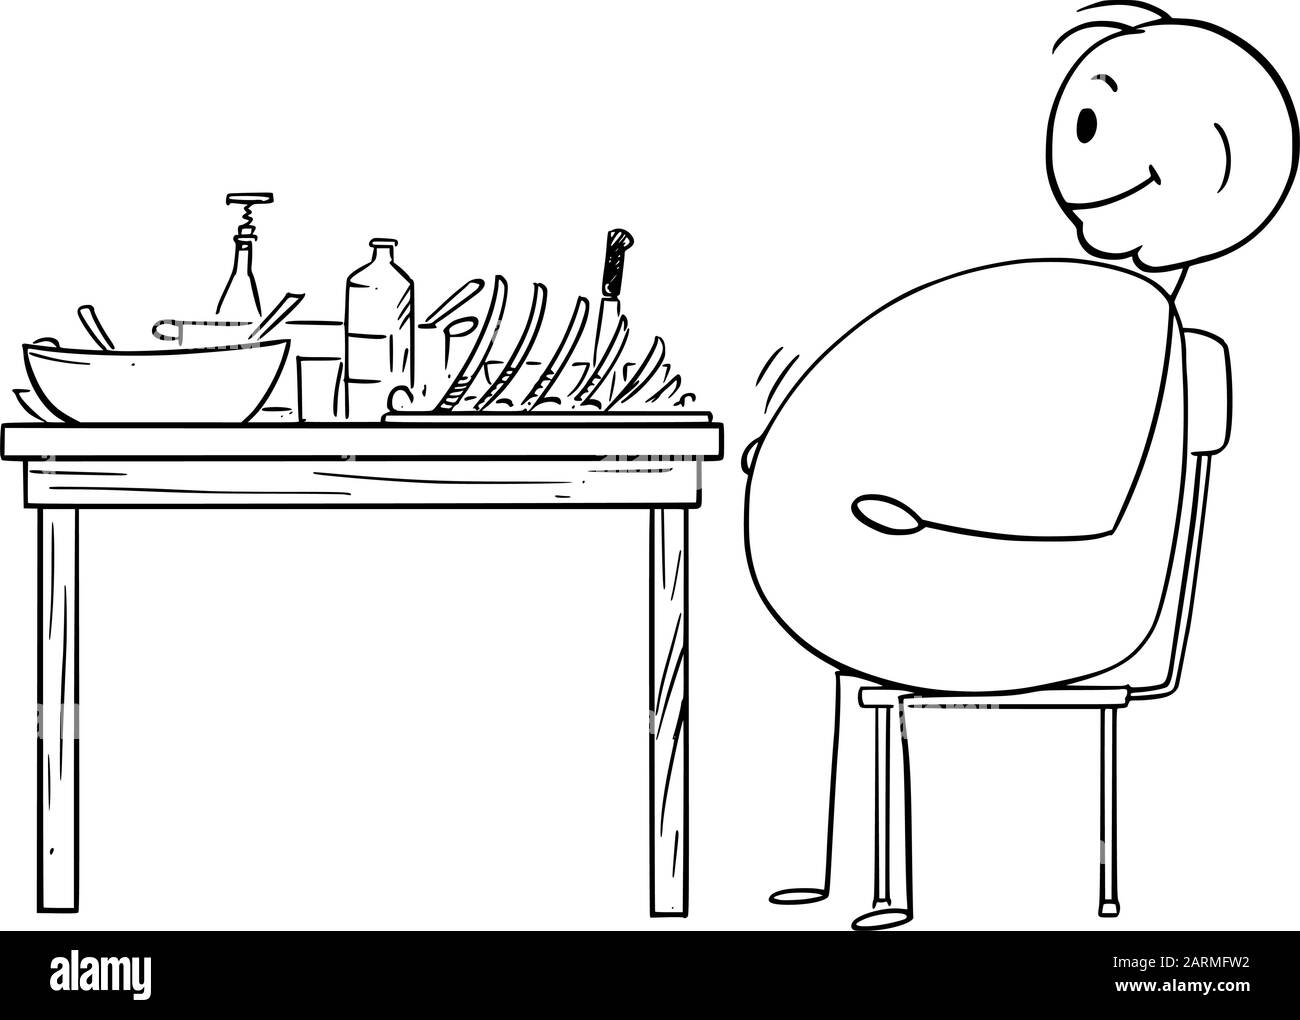 Vector Cartoon Stick Figure Zeichnung konzeptuelle Illustration von Fett oder übergewichtigen Mann sitzt zufrieden hinter dem Tisch nach dem Abendessen.Gesundes Lifestyle-Konzept. Stock Vektor